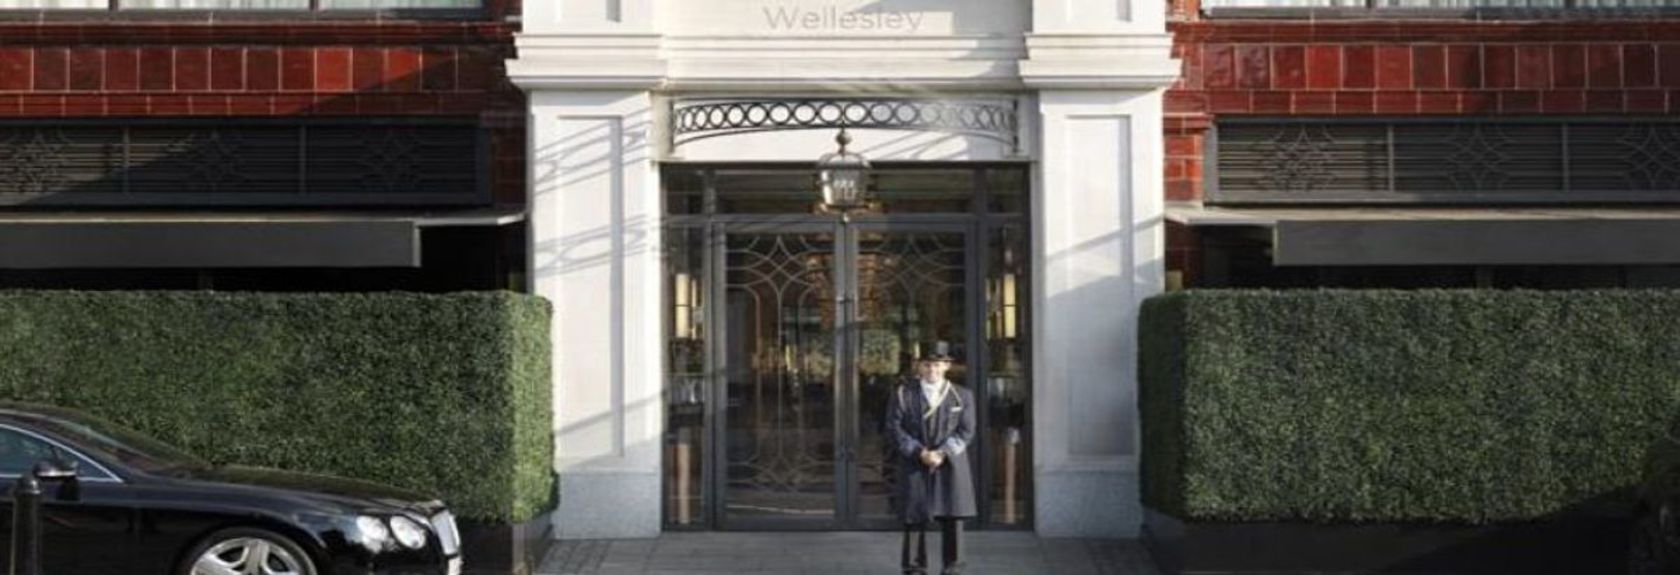 Este boutique hotel de 5 estrelas em art déco está localizado no glamoroso bairro de Knightsbridge. O Wellesley oferece quartos de luxo, 2 lounges exclusivos para charutos, um bar de coquetéis e um restaurante